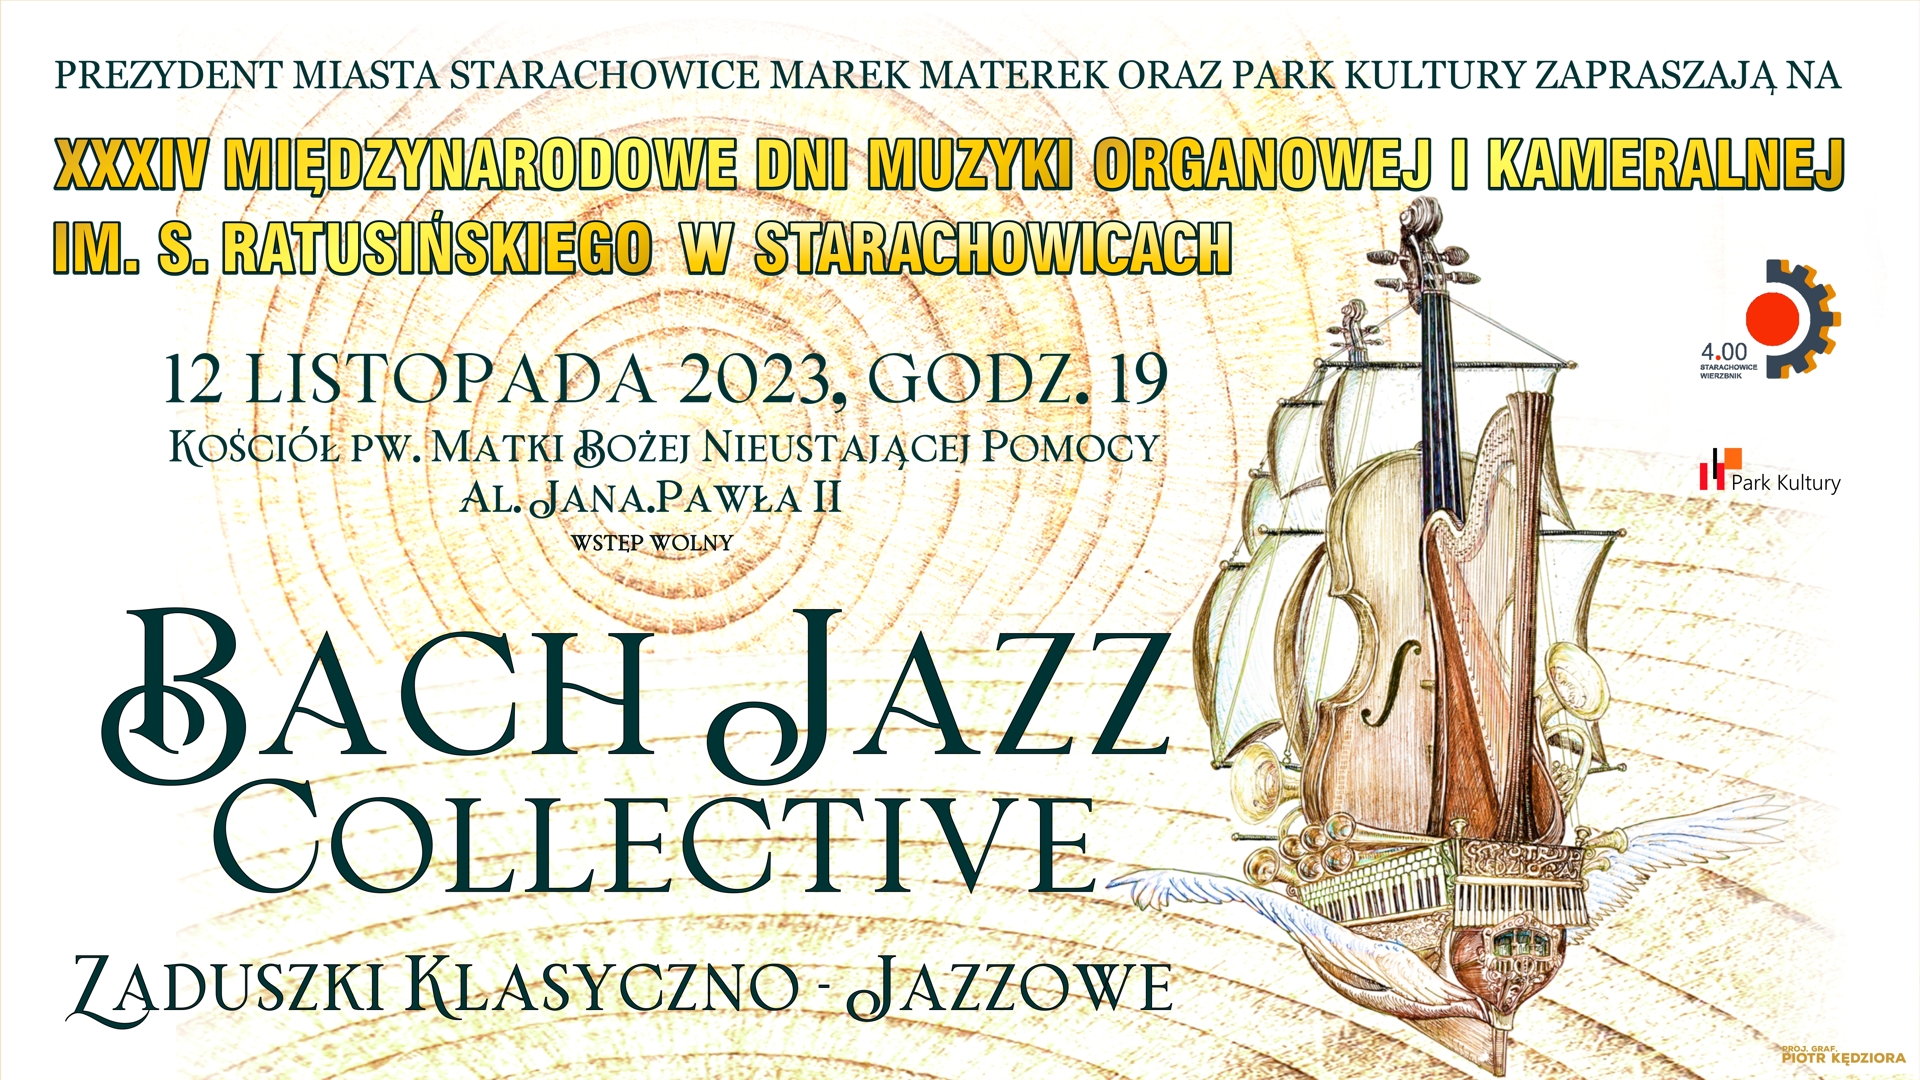 Bach Jazz Collective – Zaduszki klasyczno – jazzowe na zakończenie XXXIV Międzynarodowych Dni Muzyki Organowej i Kameralnej.